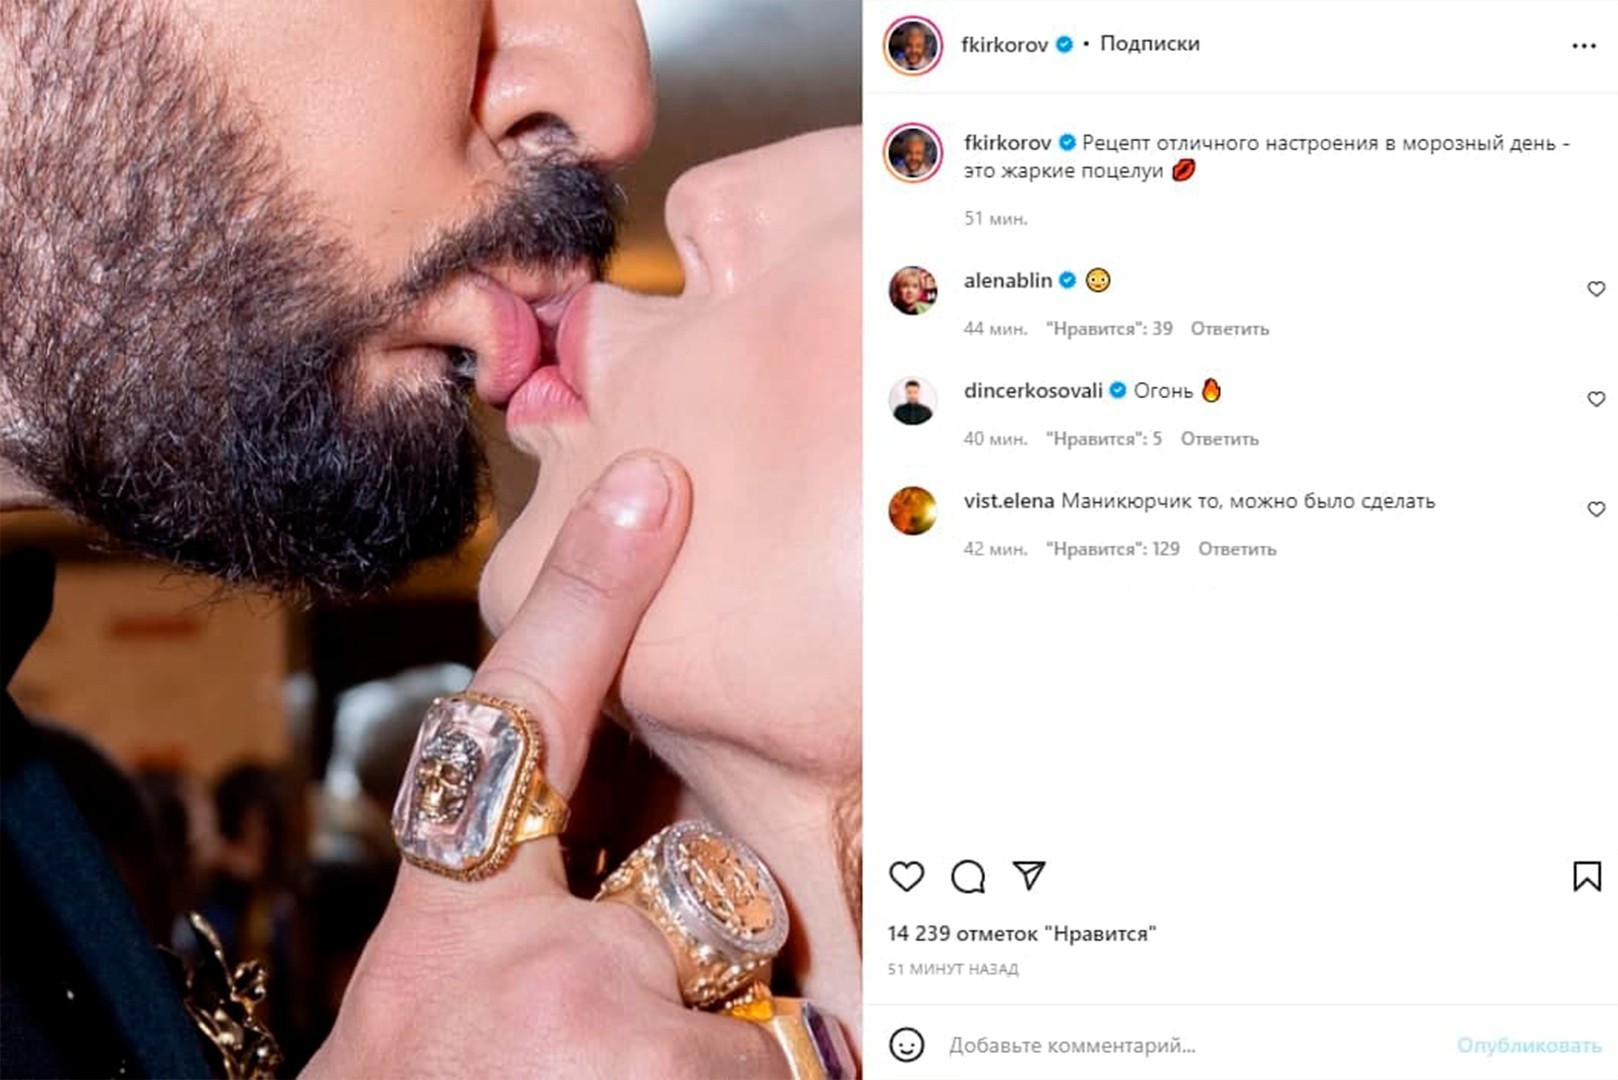 Киркоров раскрыл личность девушки, фото поцелуя с которой быстро удалил